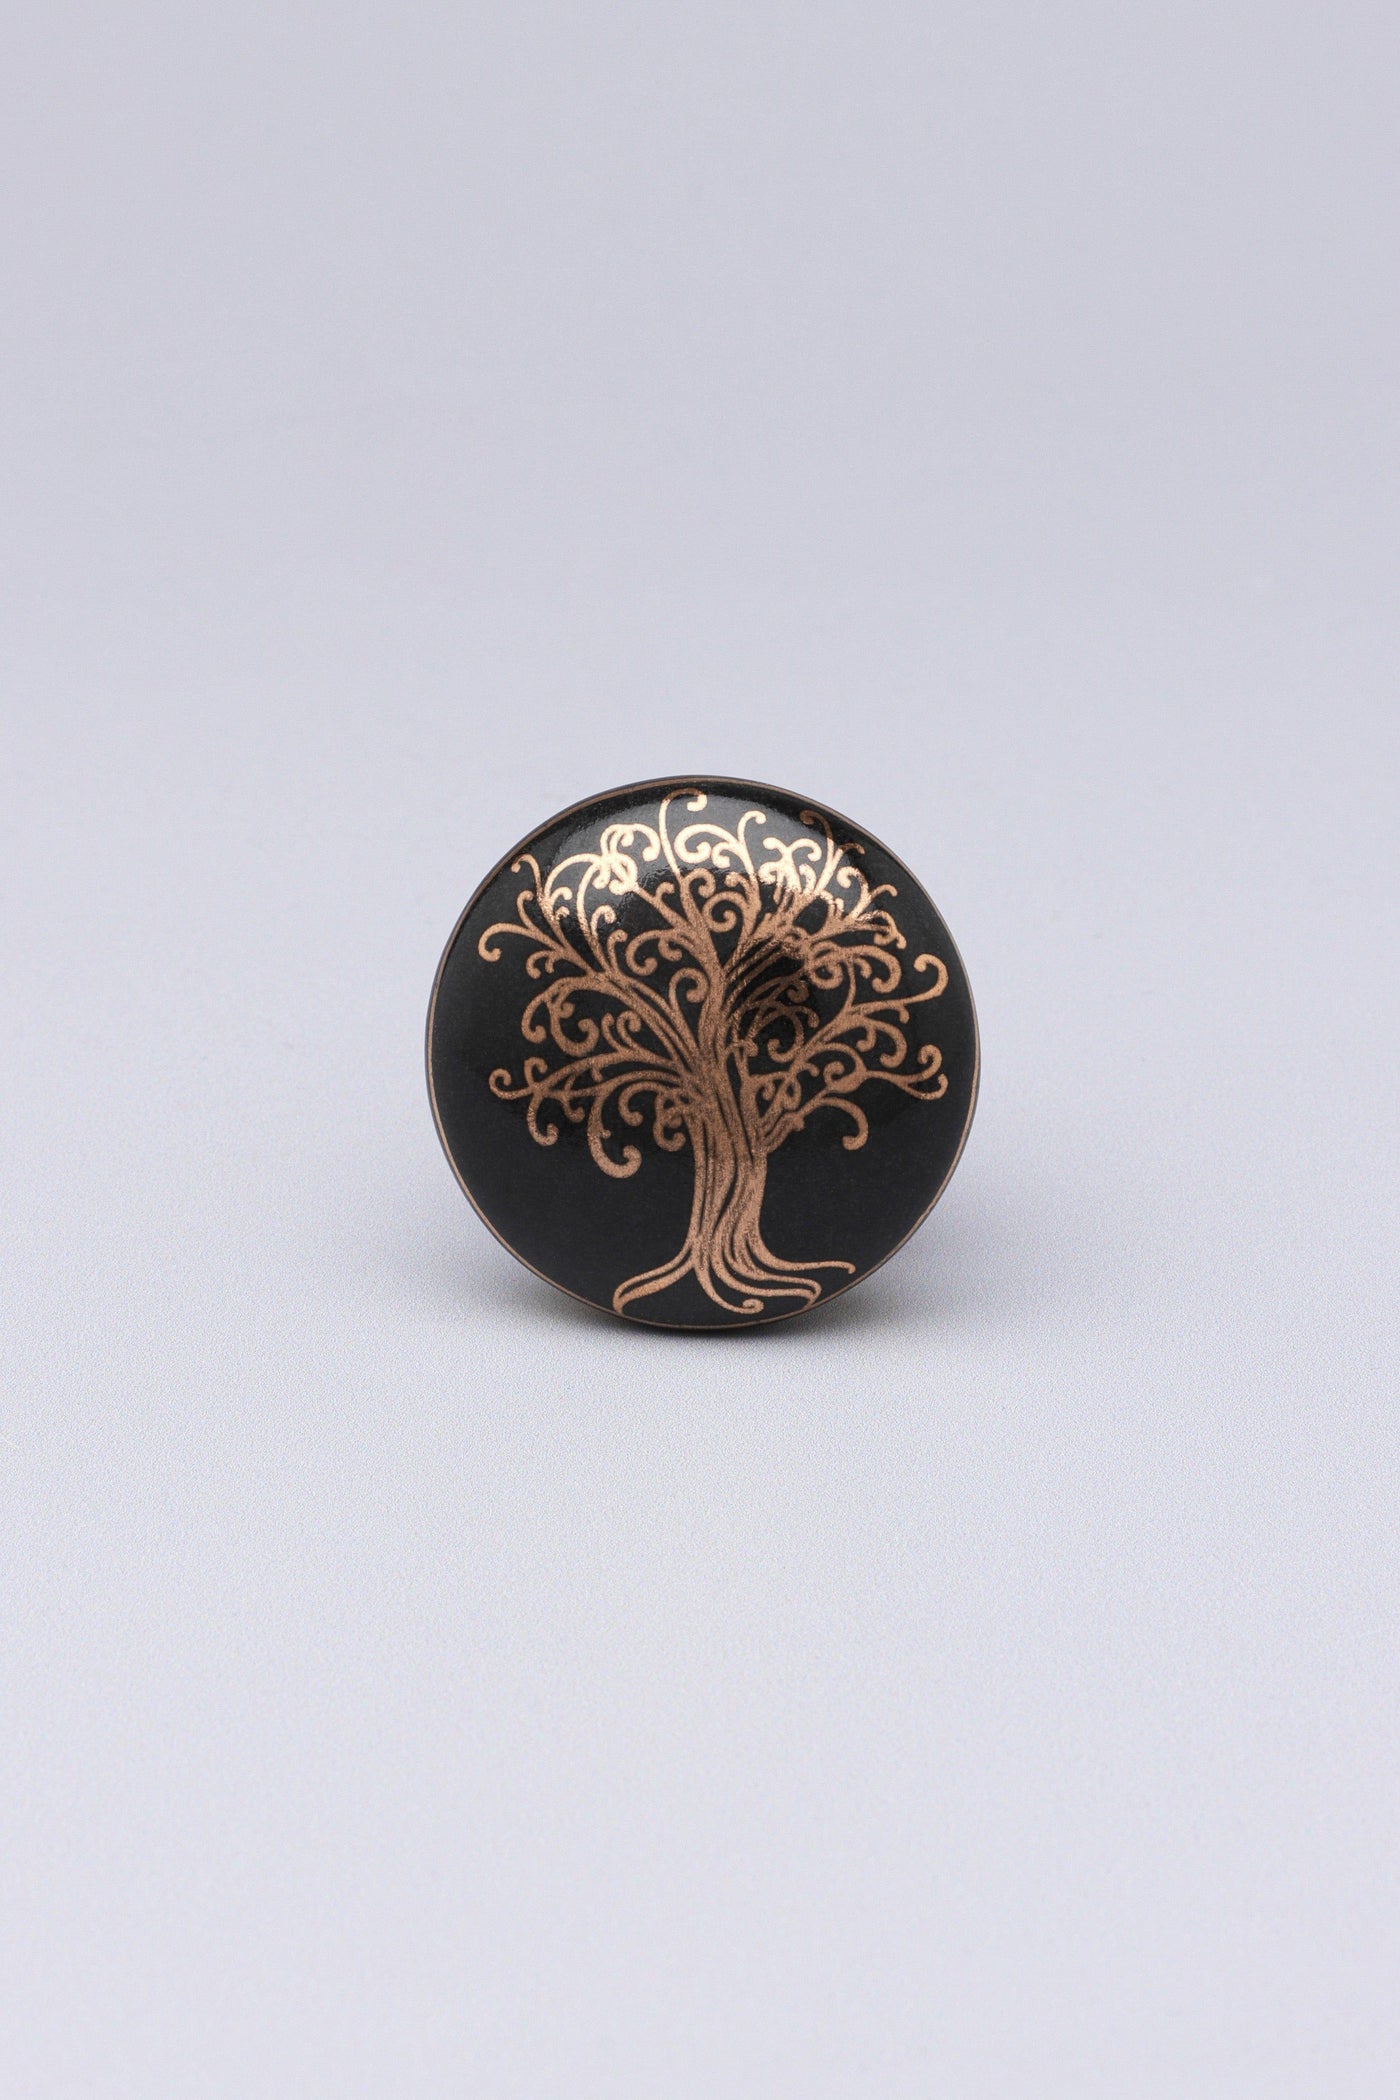 G Decor Door Knobs & Handles Black / Tree Black Gold Tree of Life Ceramic Door Knobs Cupboard Drawer Pull Door Handles